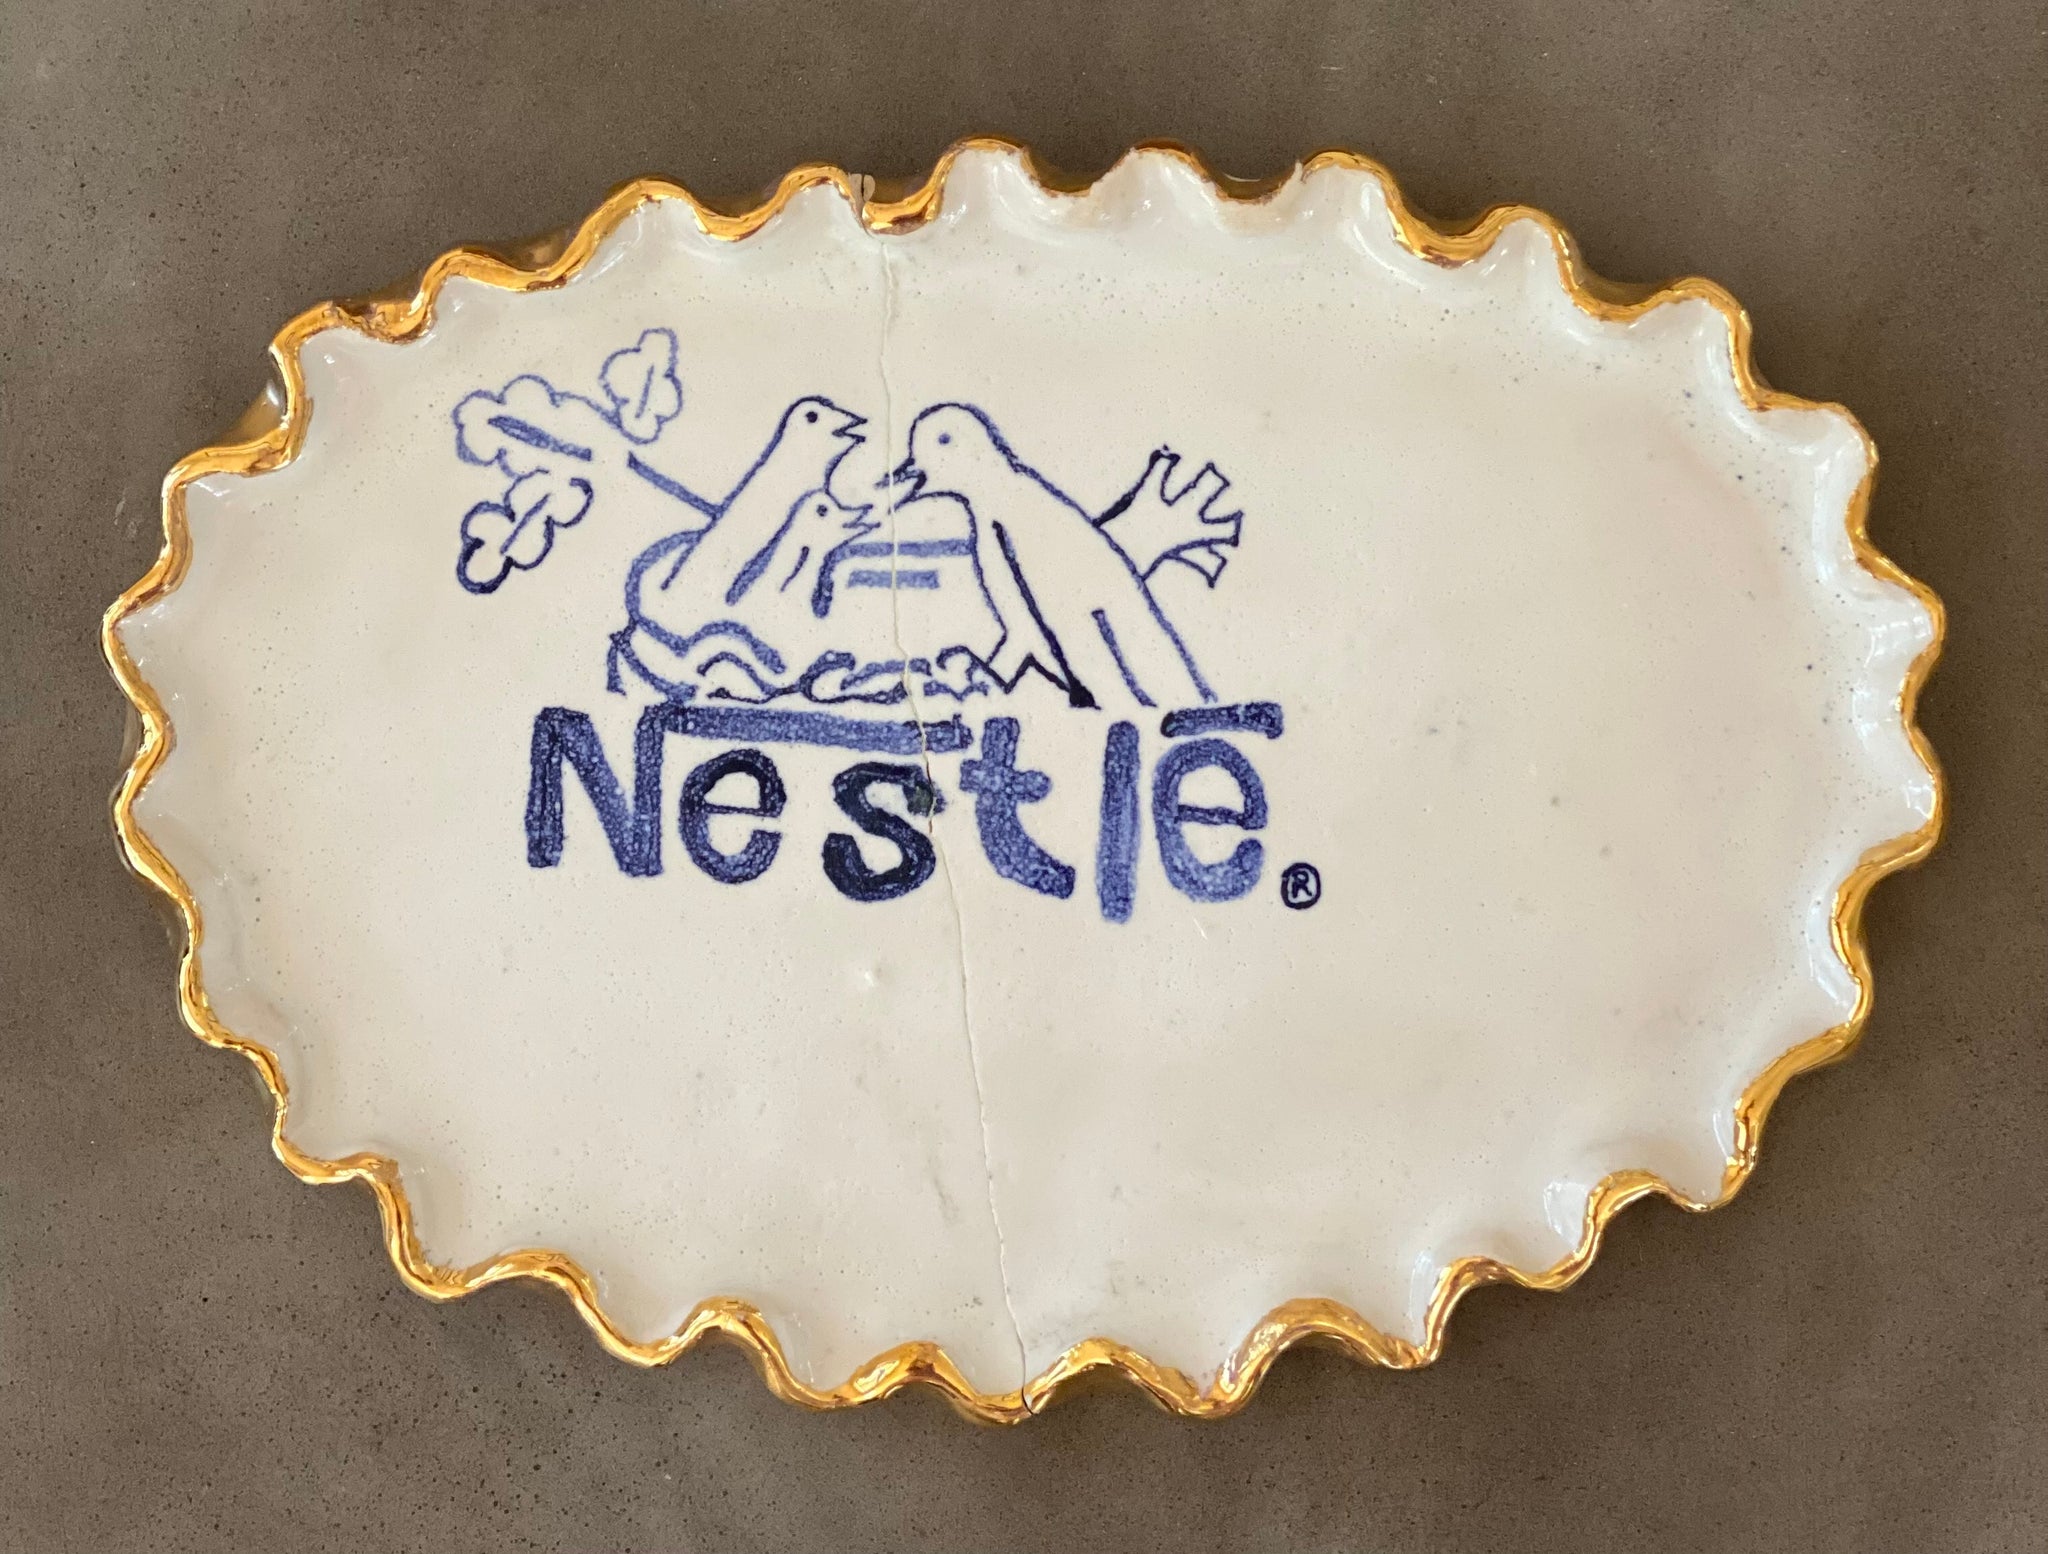 Koos Buster, "Nestle"